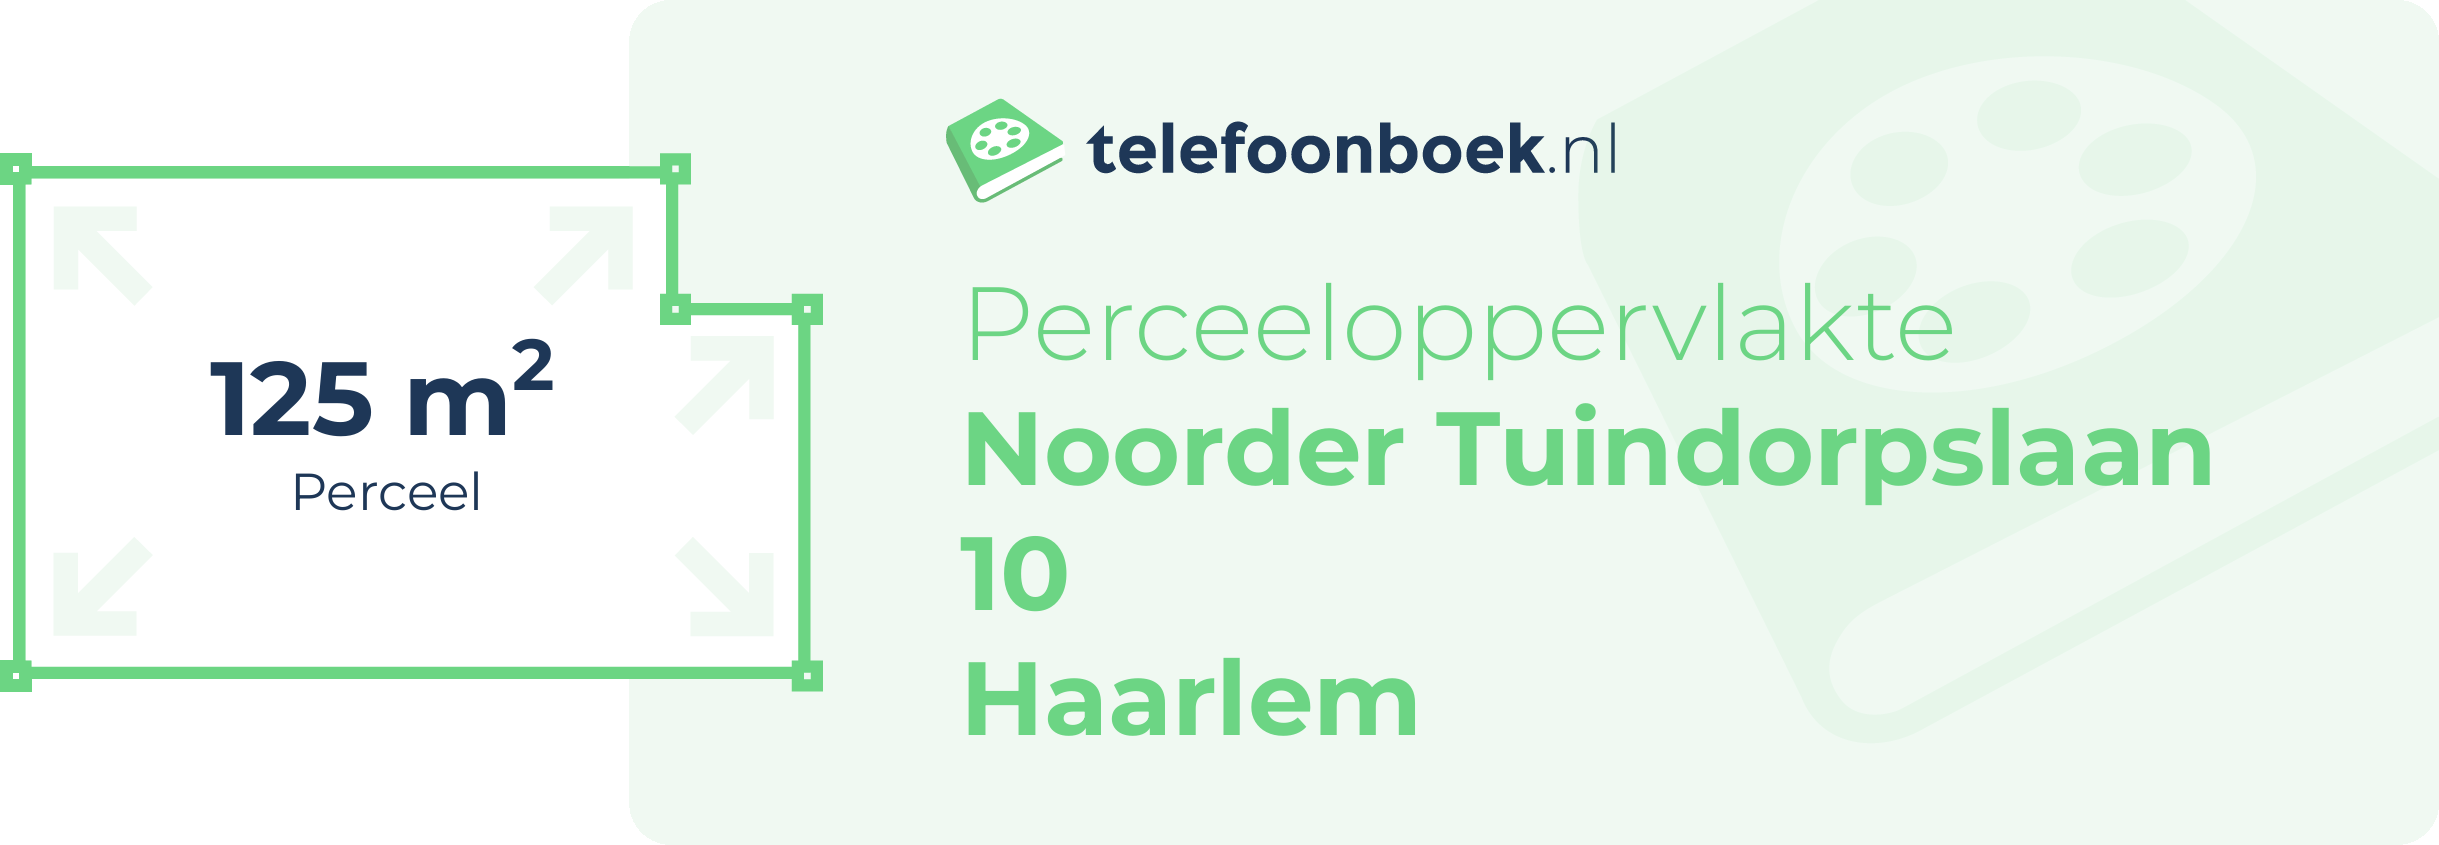 Perceeloppervlakte Noorder Tuindorpslaan 10 Haarlem